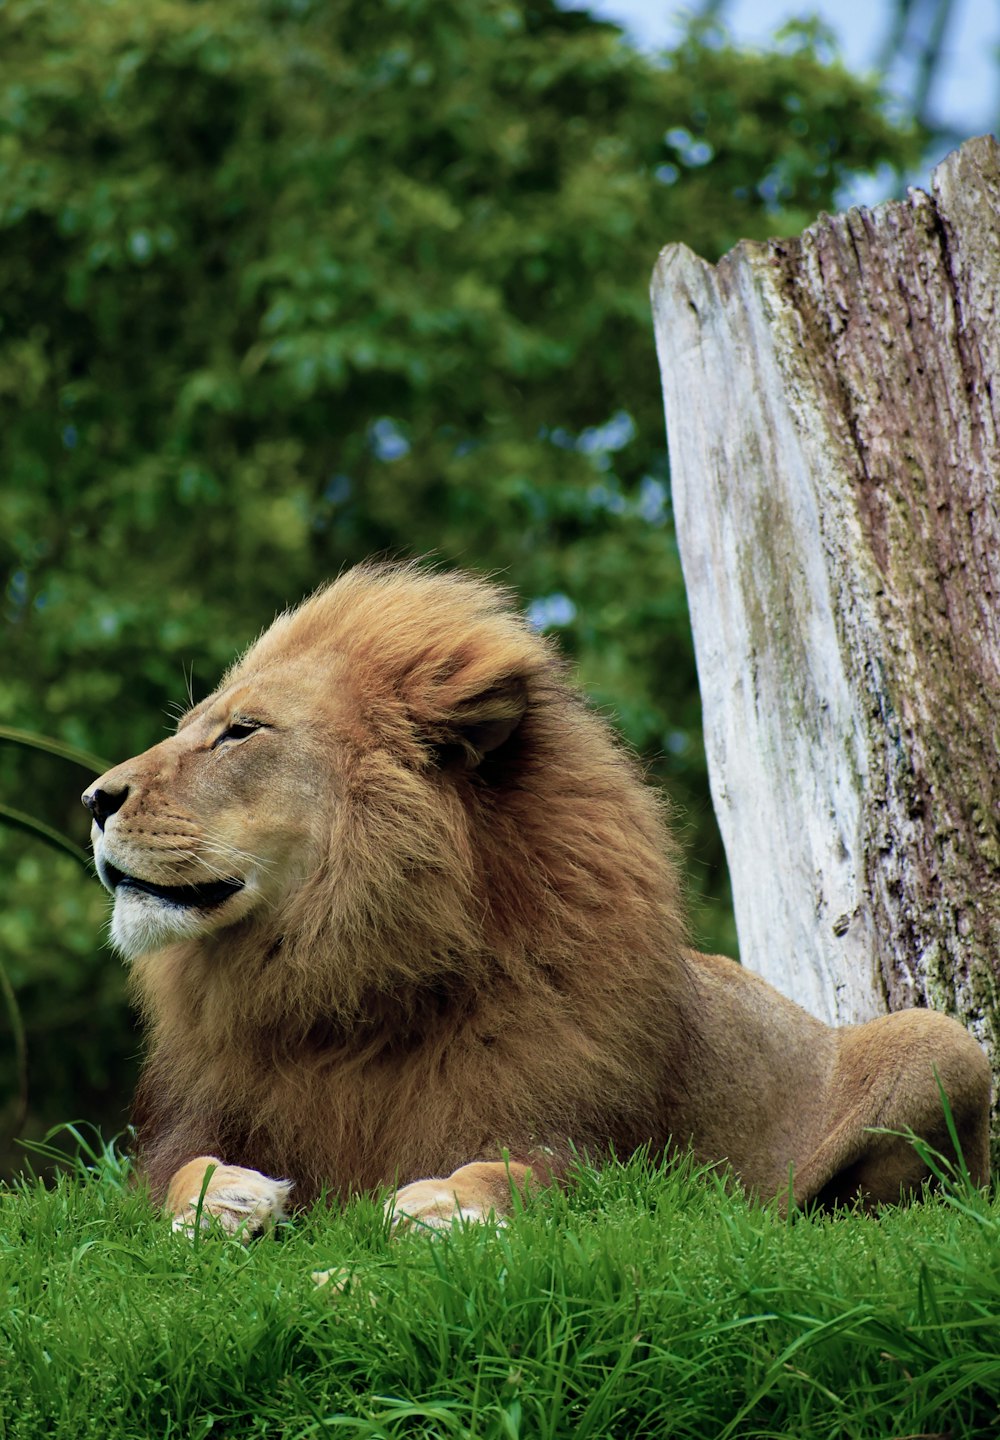 leonessa marrone che si siede sull'erba verde